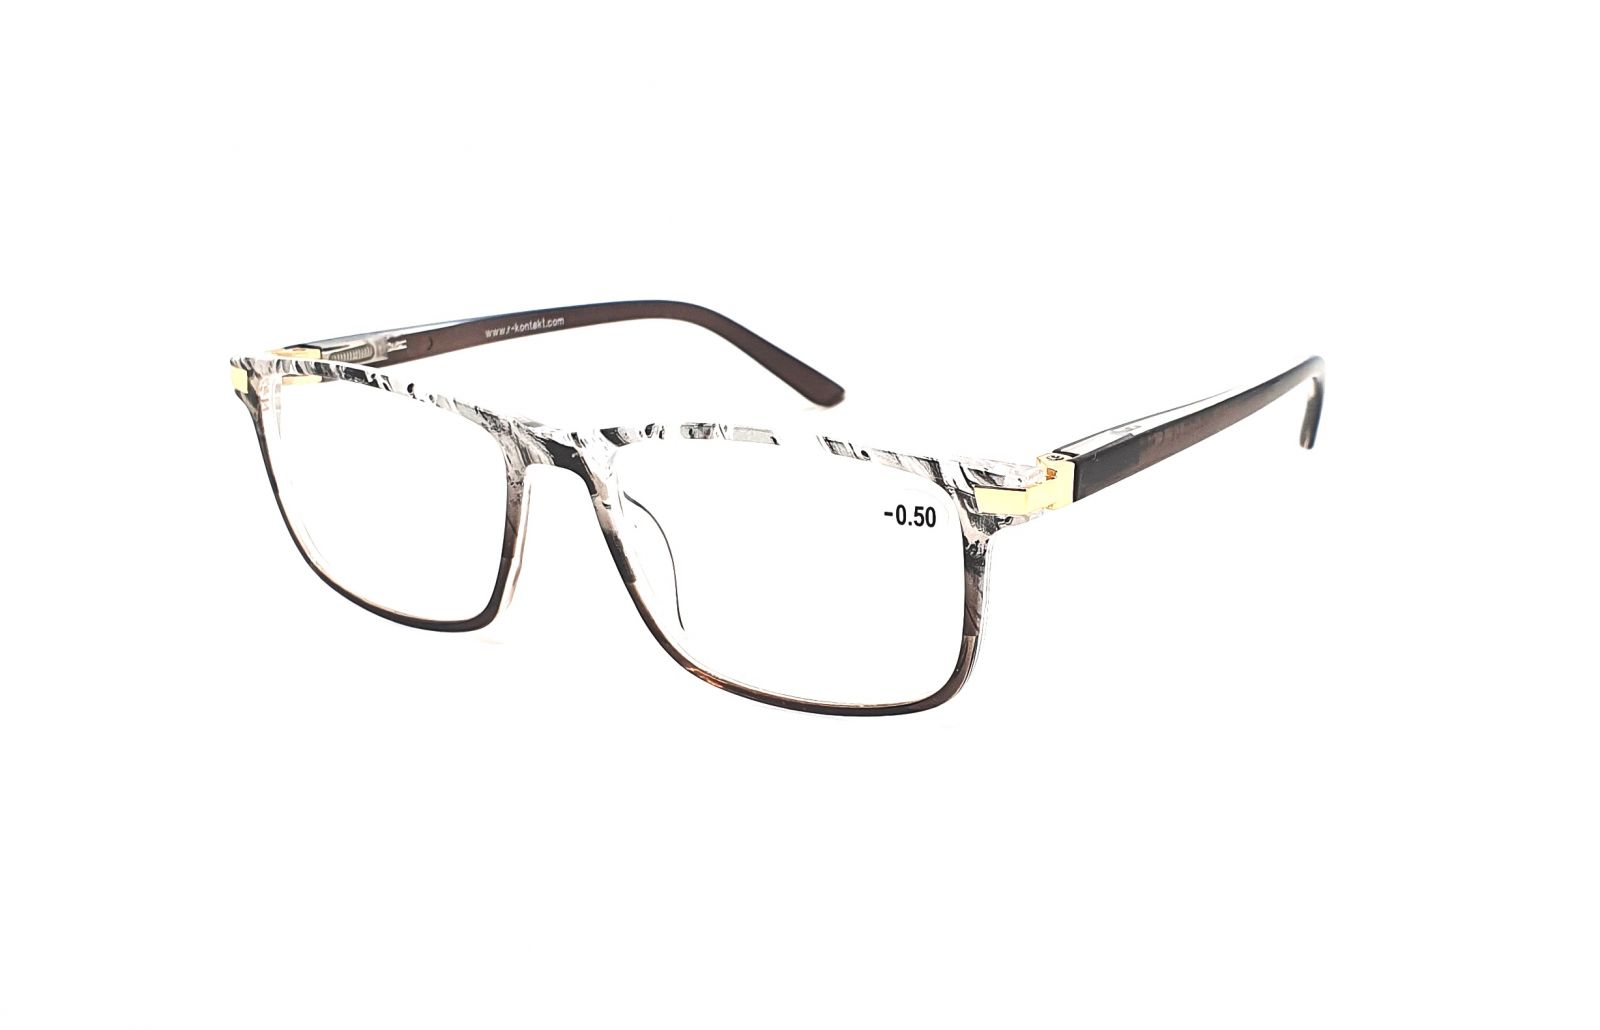 Dioptrické brýle V3075 / -1,50 grey flex